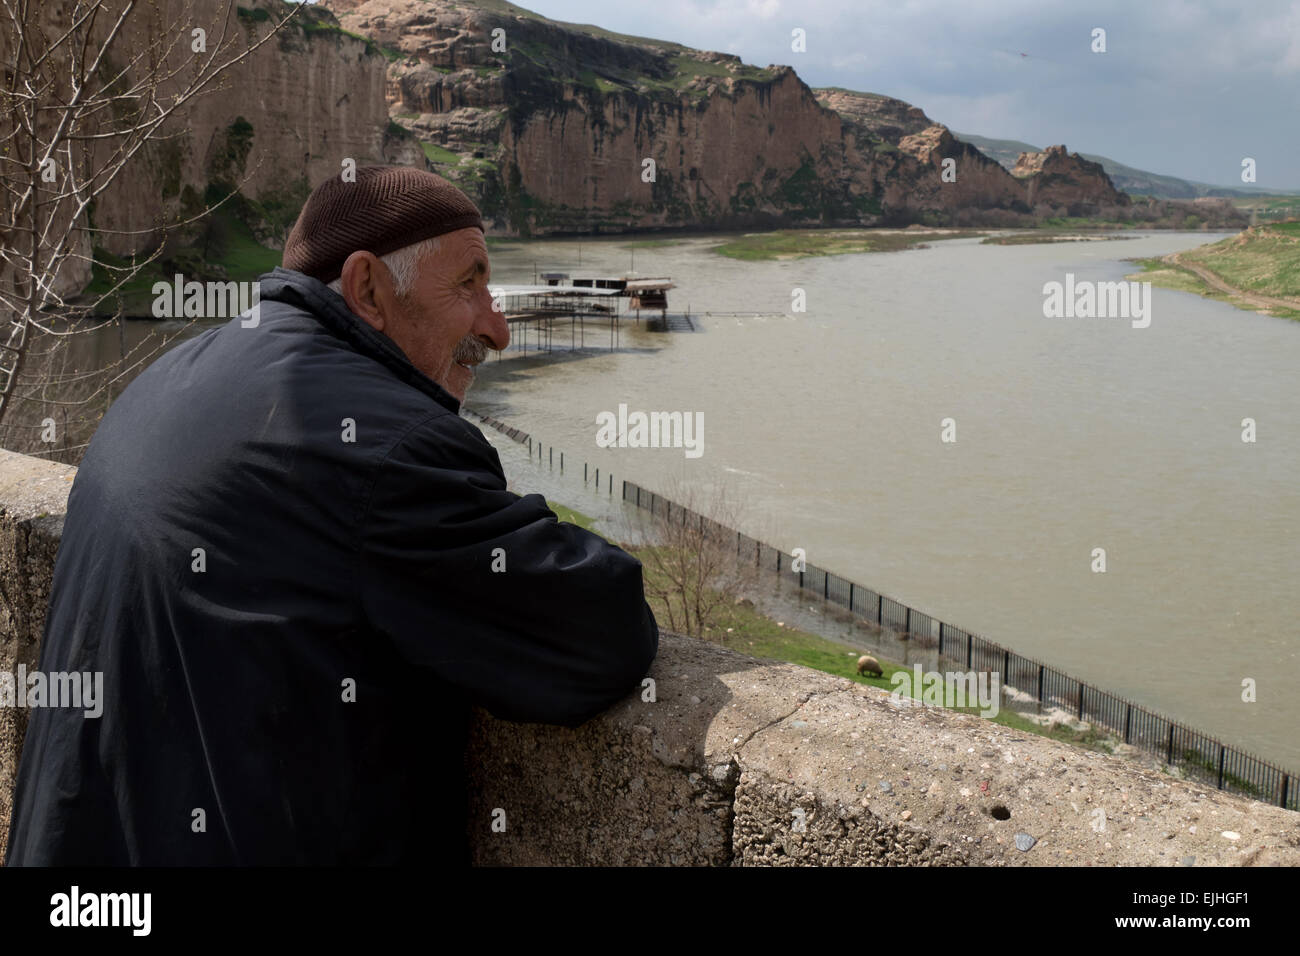 Vista de Hasankeyf, antigua ciudad cerca de Batman, el Kurdistán turco, Turquía. Viejo hombre kurdo Foto de stock